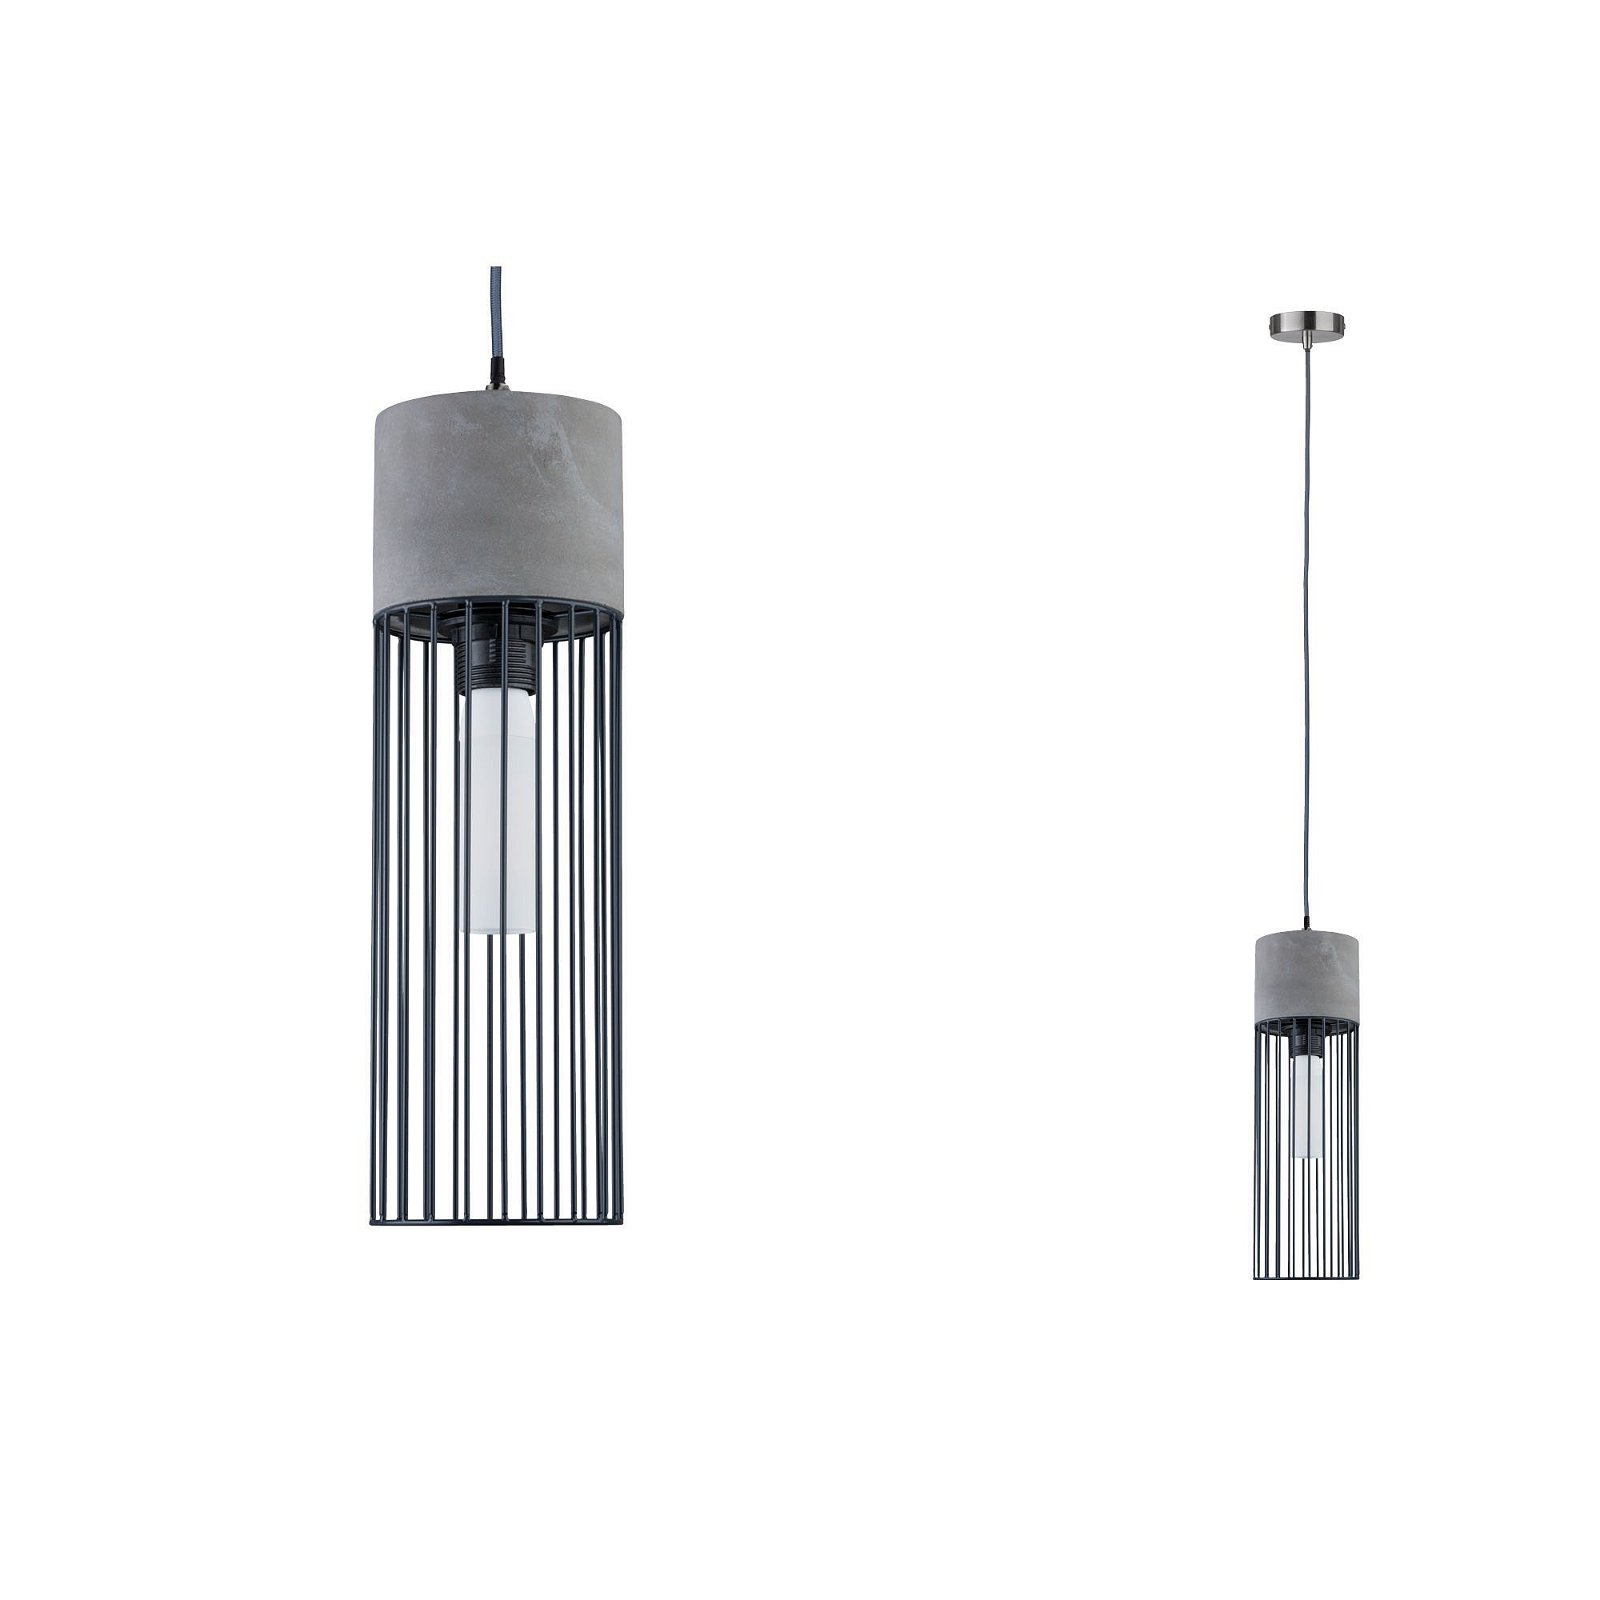 Neordic Hanglamp Henja E27 max. 20W Grijs/Staal geborsteld dimbaar Beton/Metaal